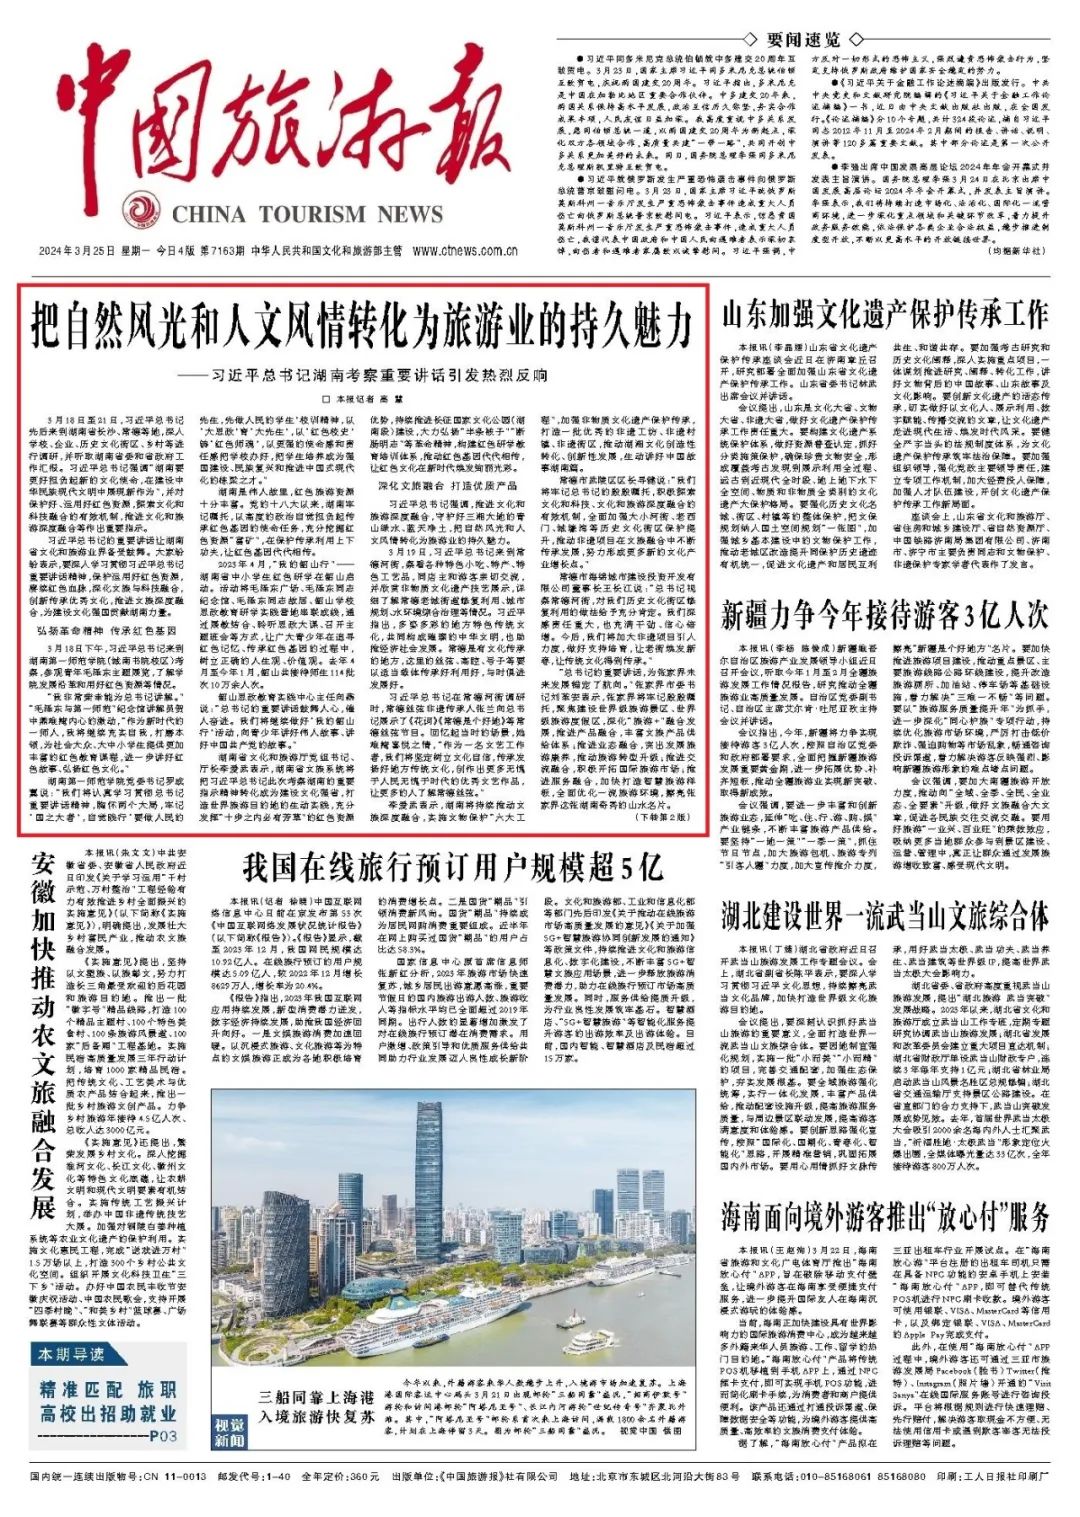 《中国旅游报》头版头条推介 | 把自然风光和人文风情转化为旅游业的持久魅力